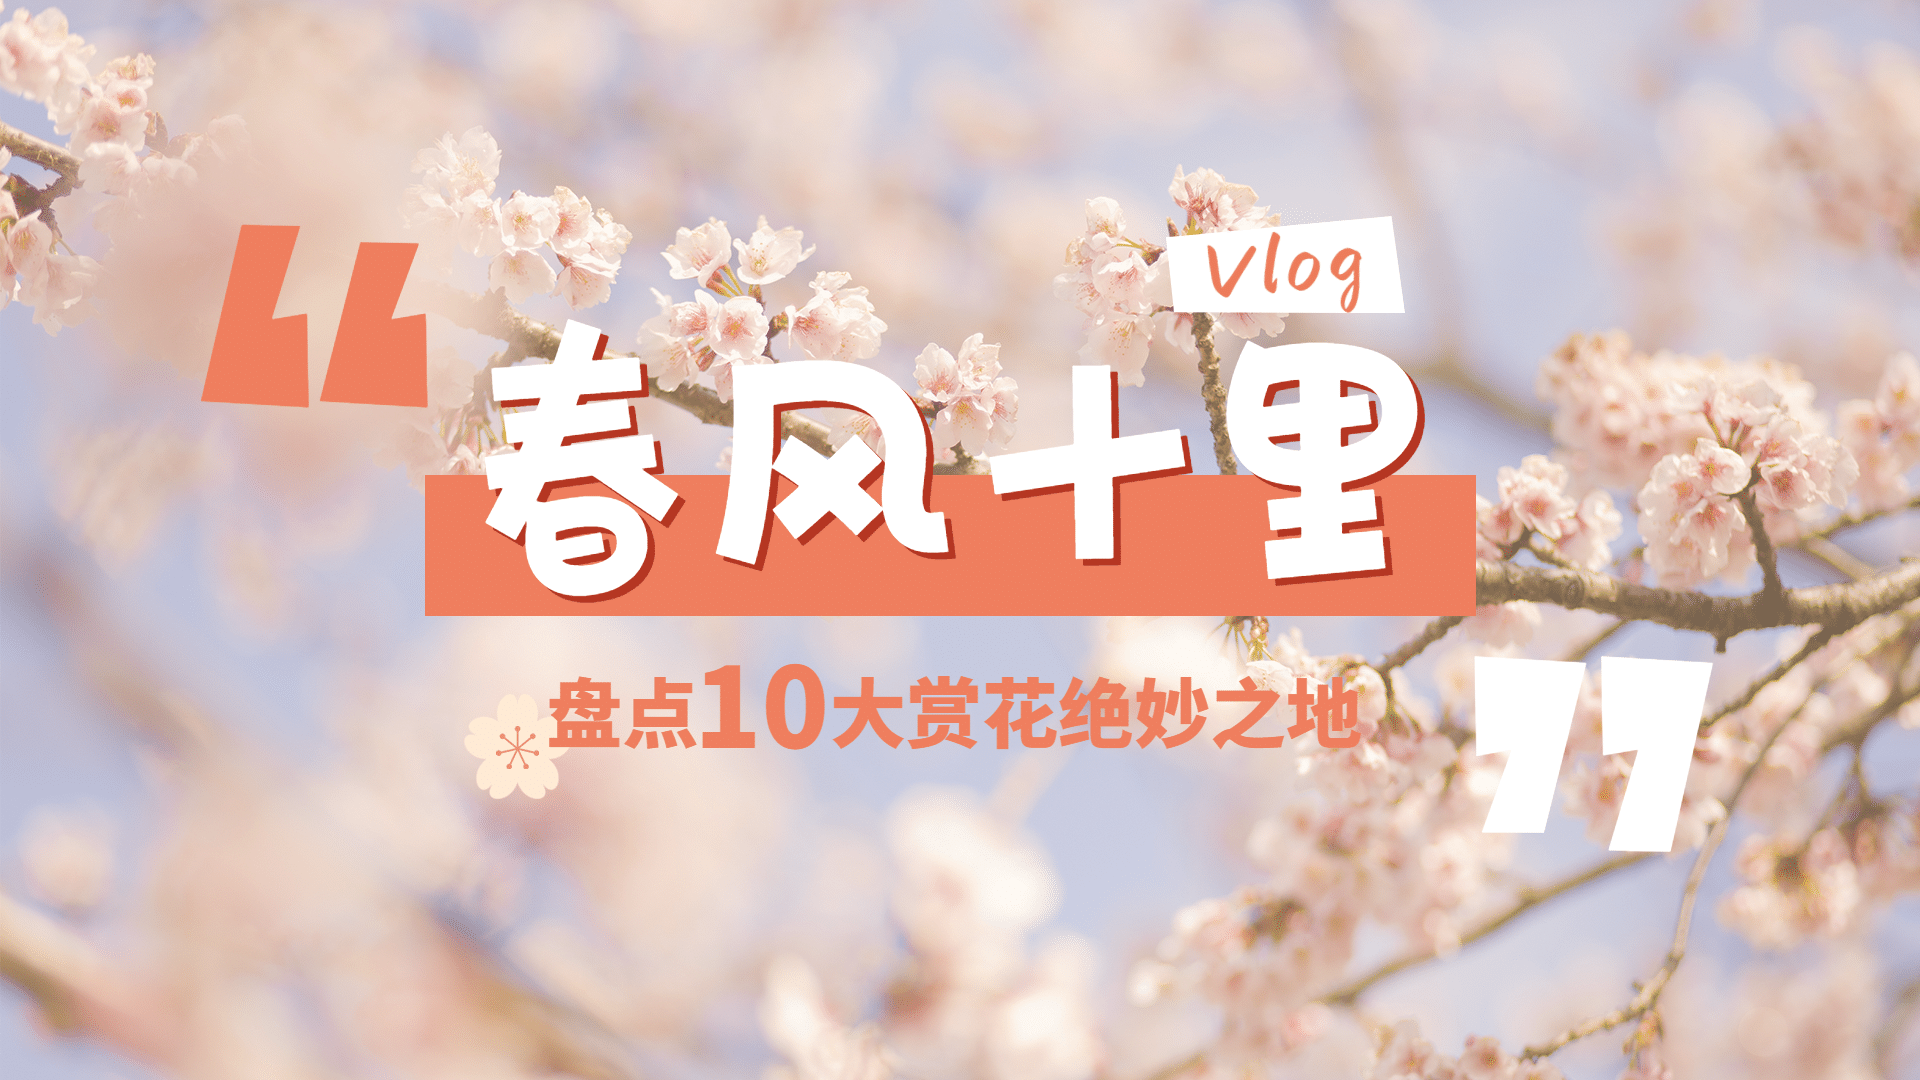 简约清新旅游生活vlog横版视频封面